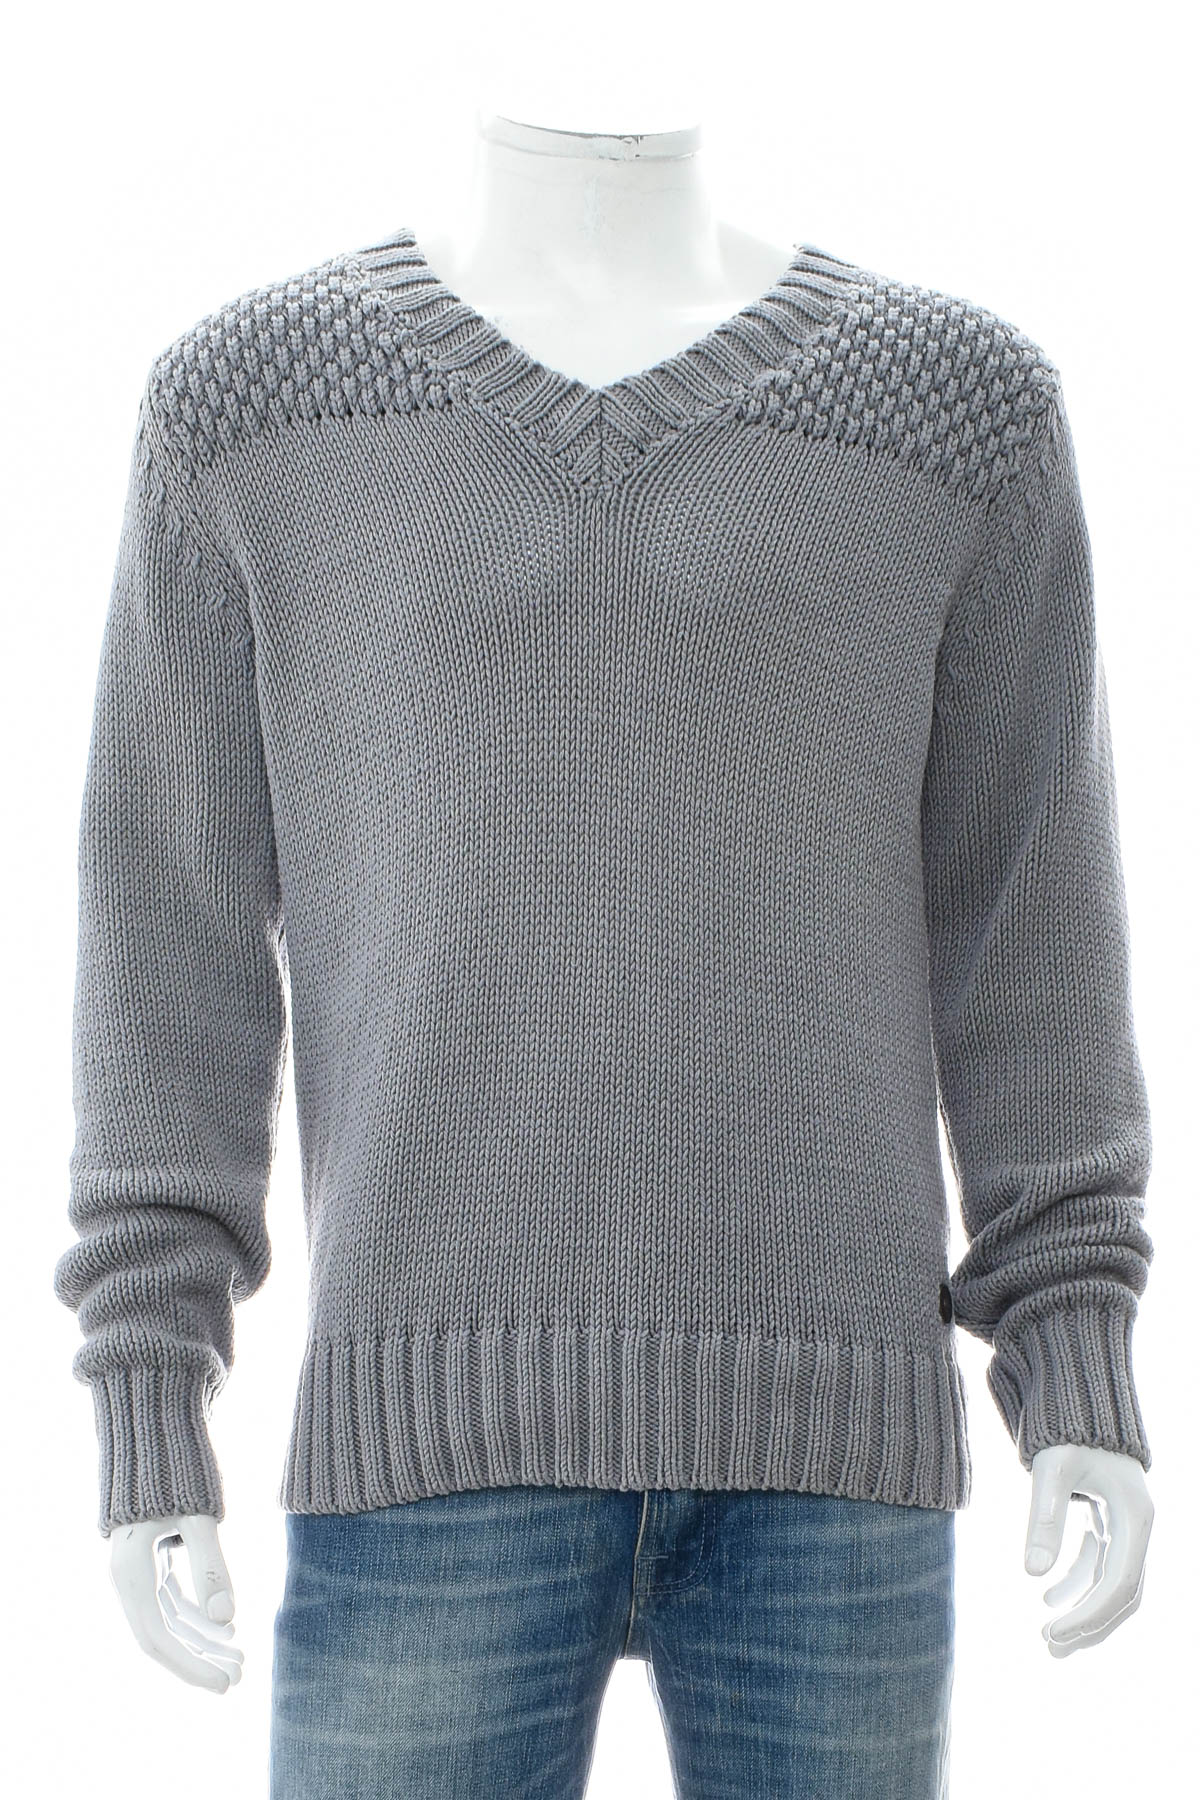 Men's sweater - Burlington - 0